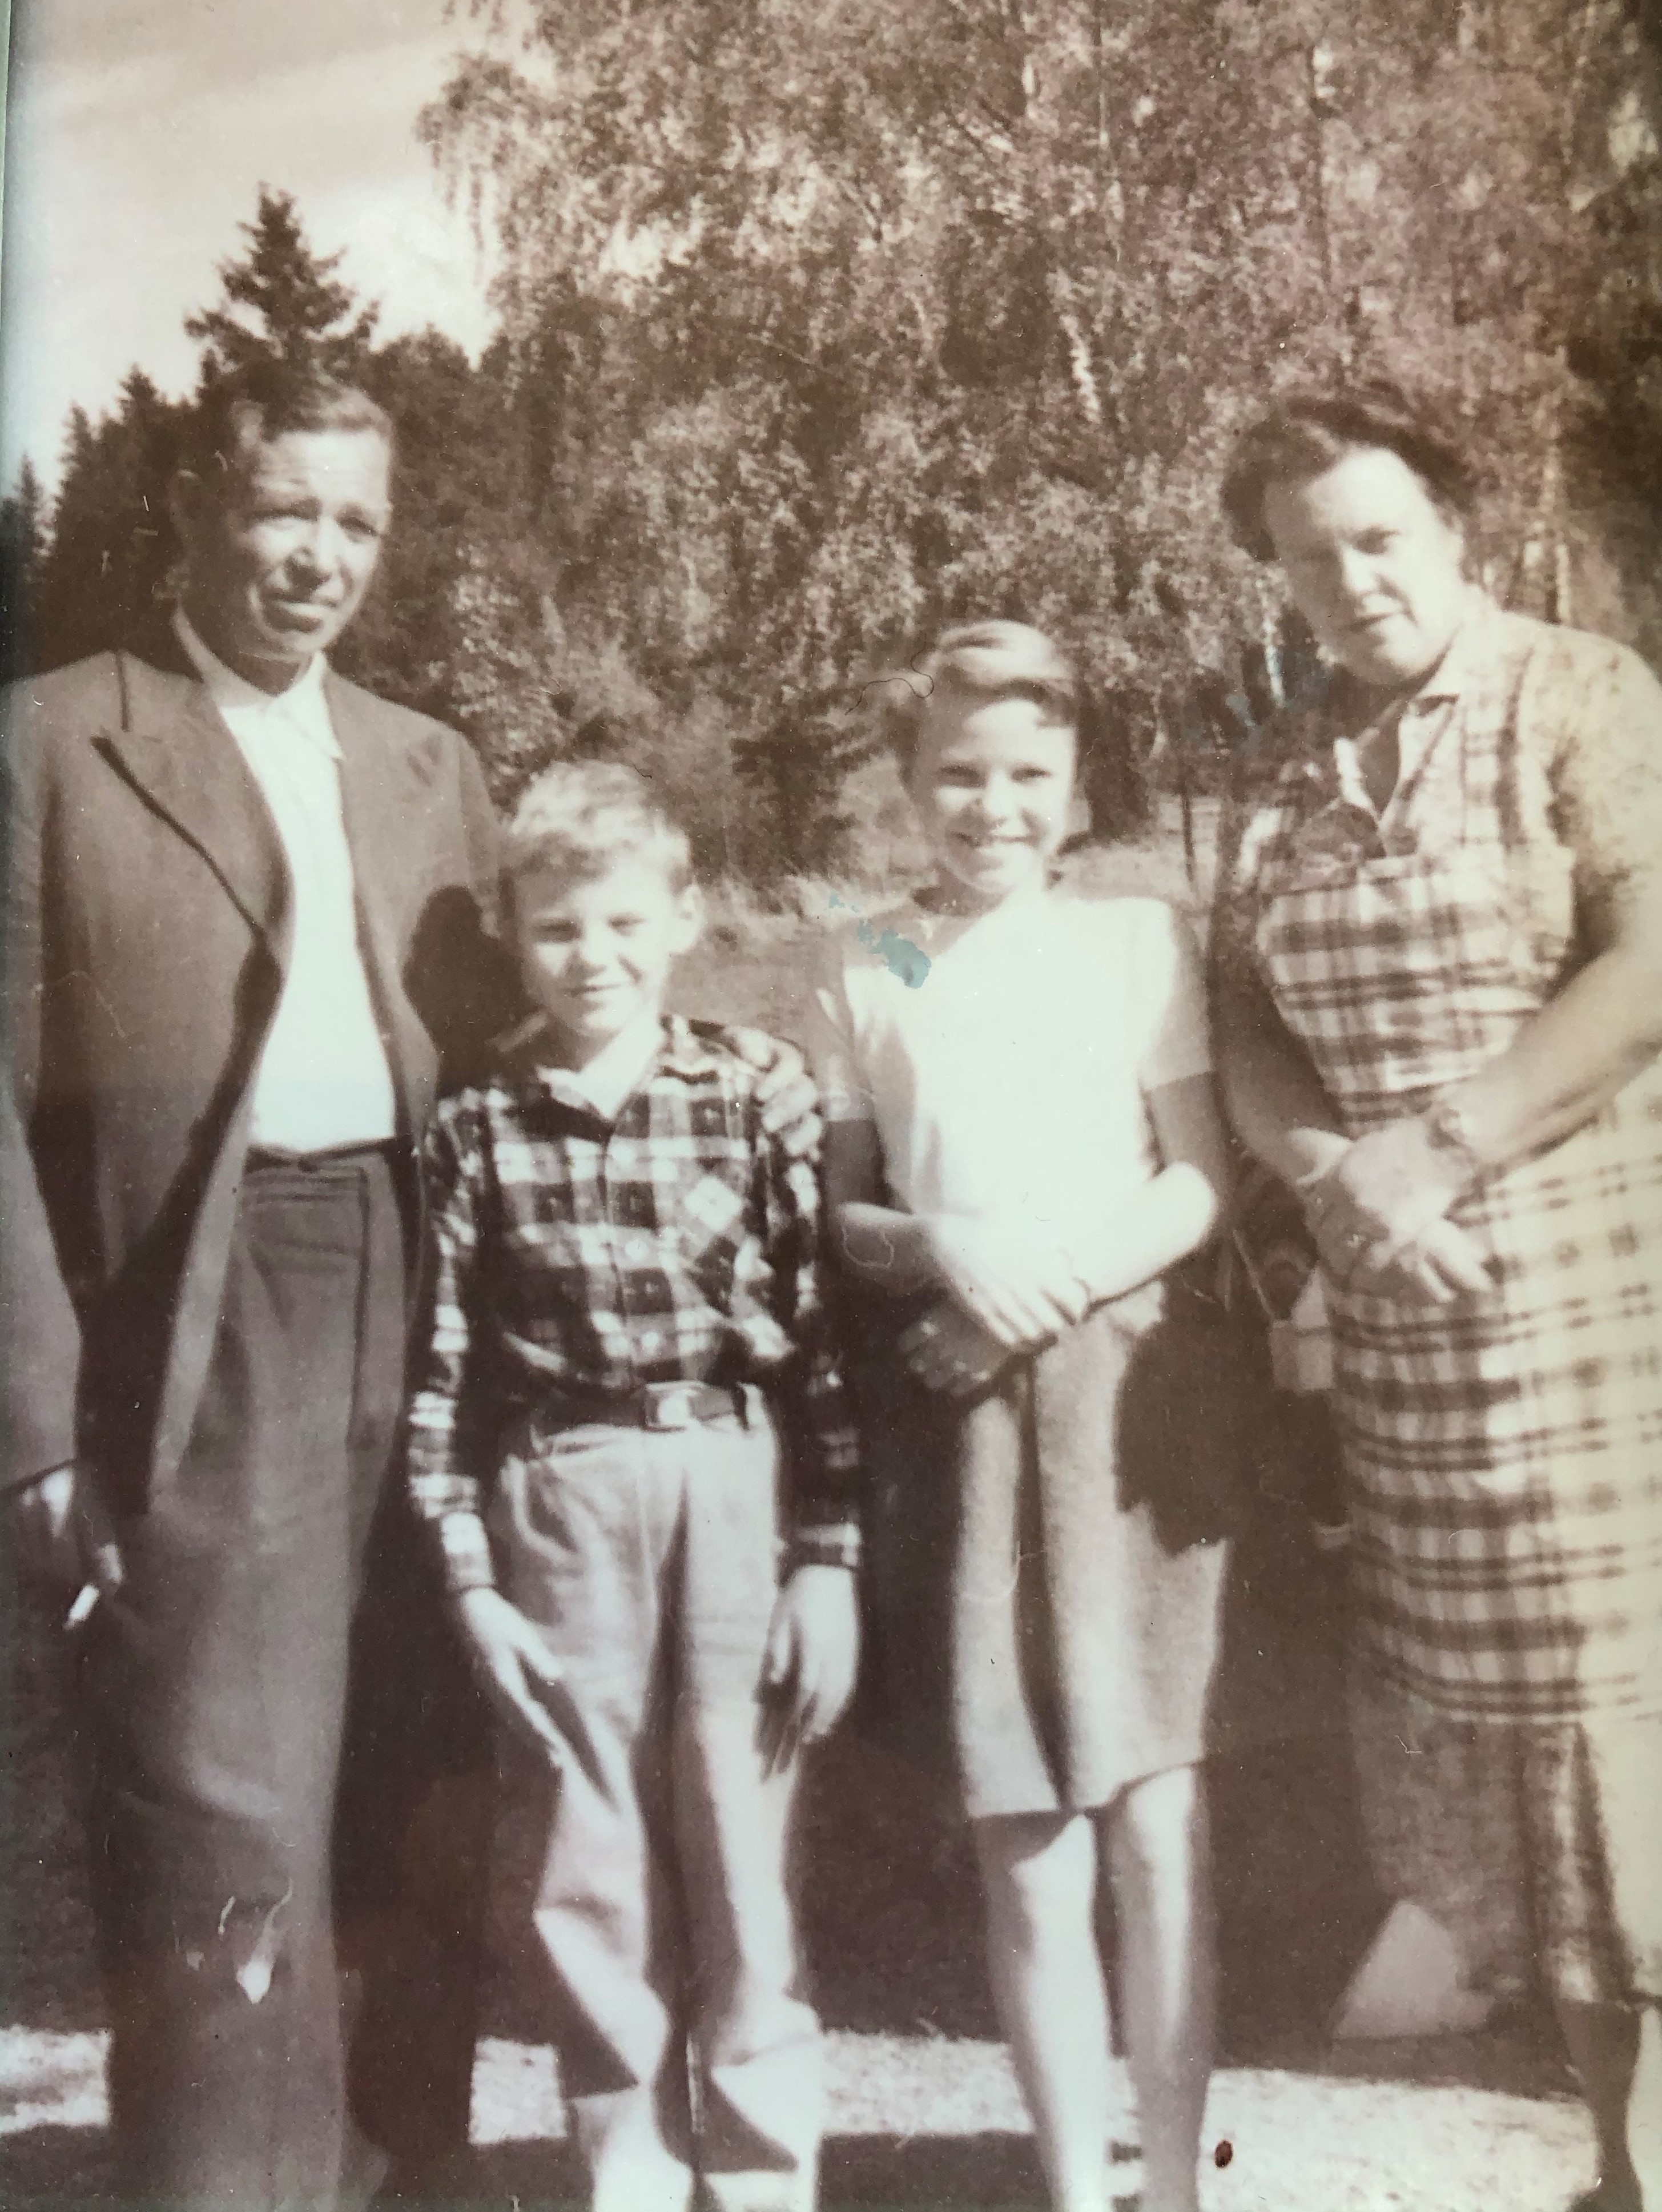 Lærer Jens Velo sammen med familien ca. 1957, f.v. Jens Olav, Anne
og Karen. Bildet er utlånt av Jens Olav Velo.